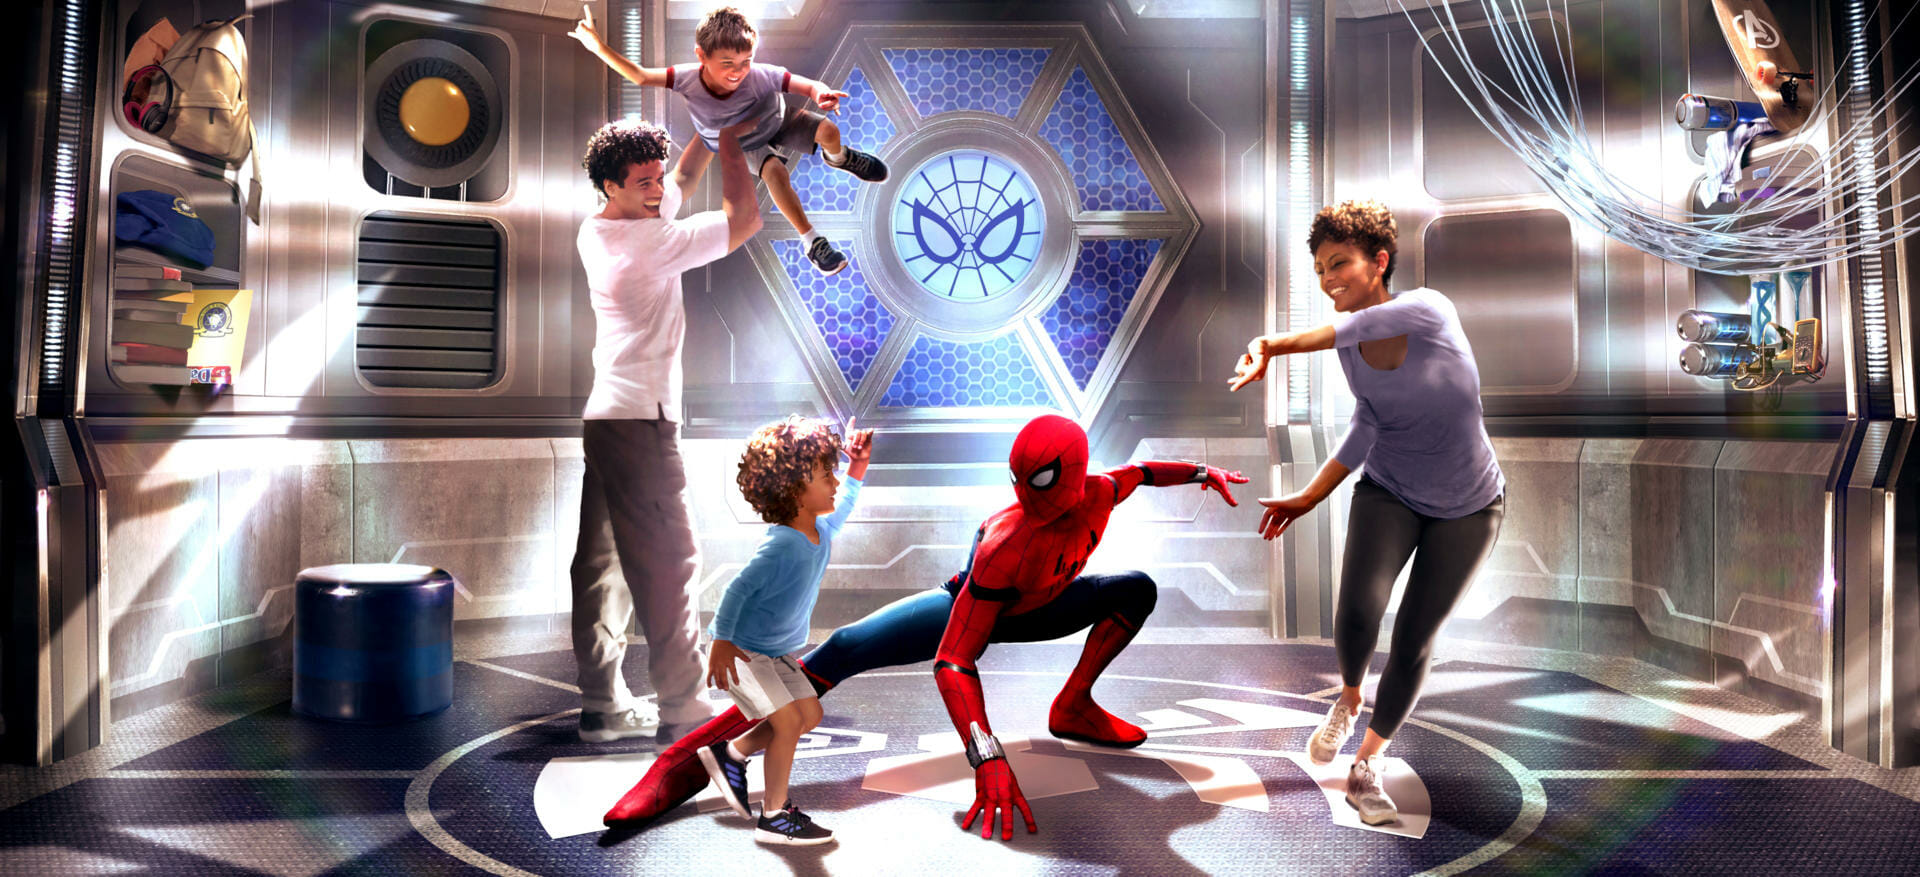 Avengers Campus Paris - Training Center Spider-Man